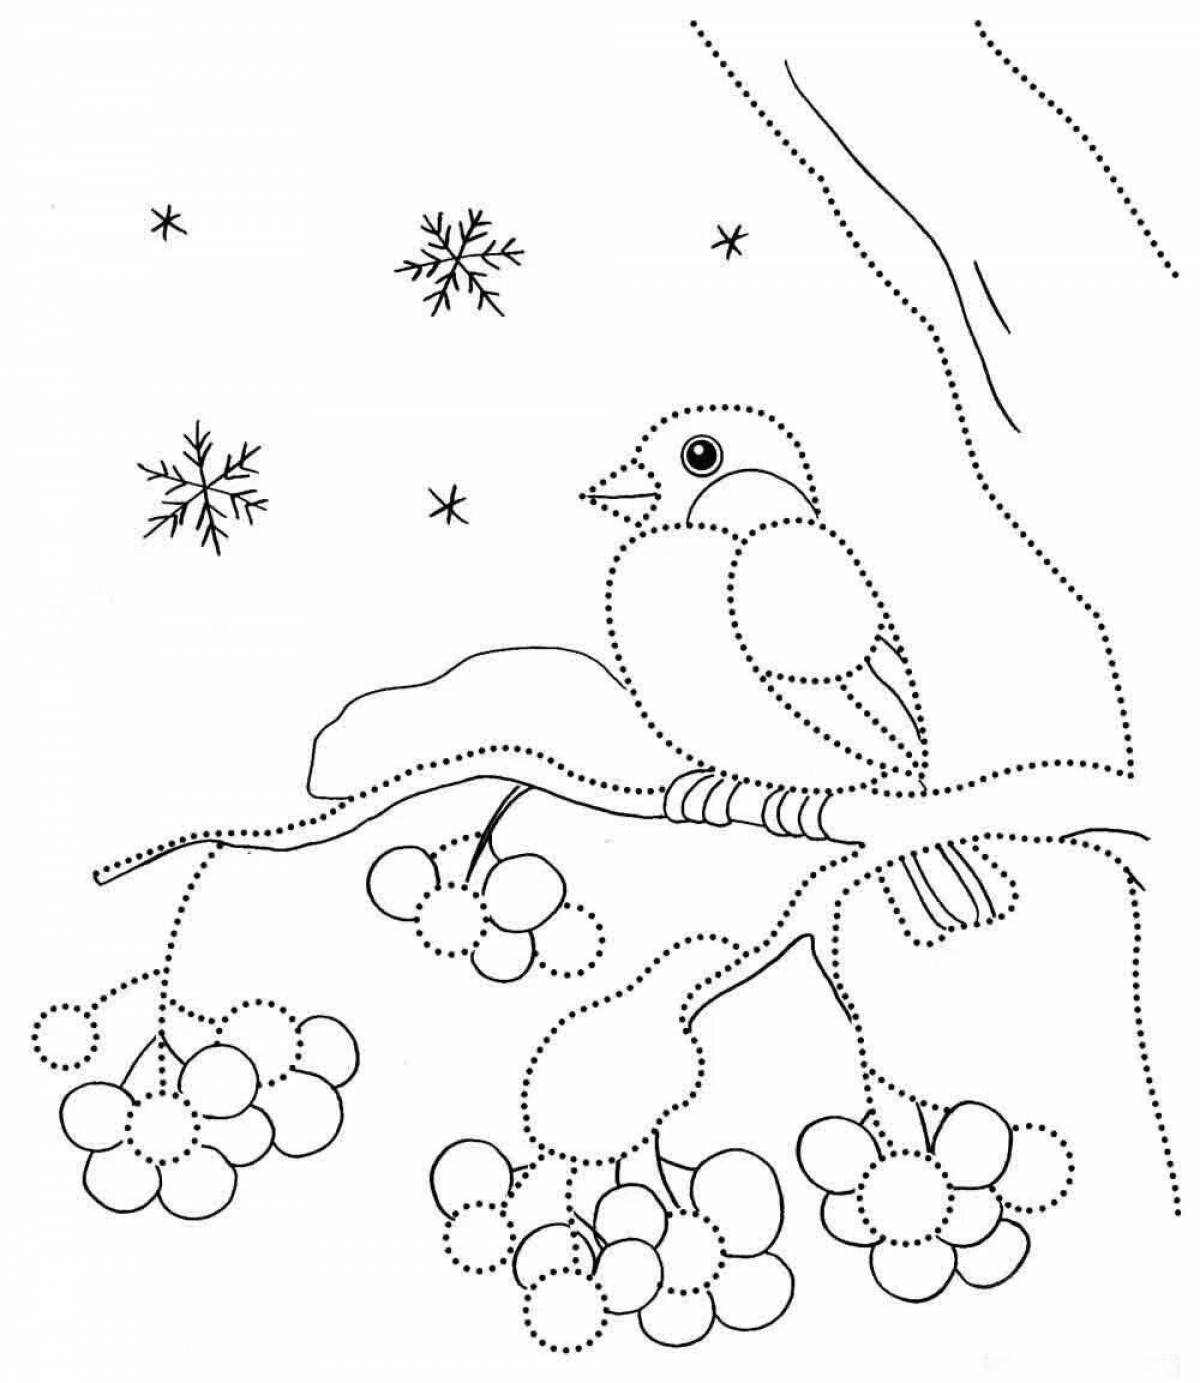 Exquisite winter birds coloring book for preschoolers